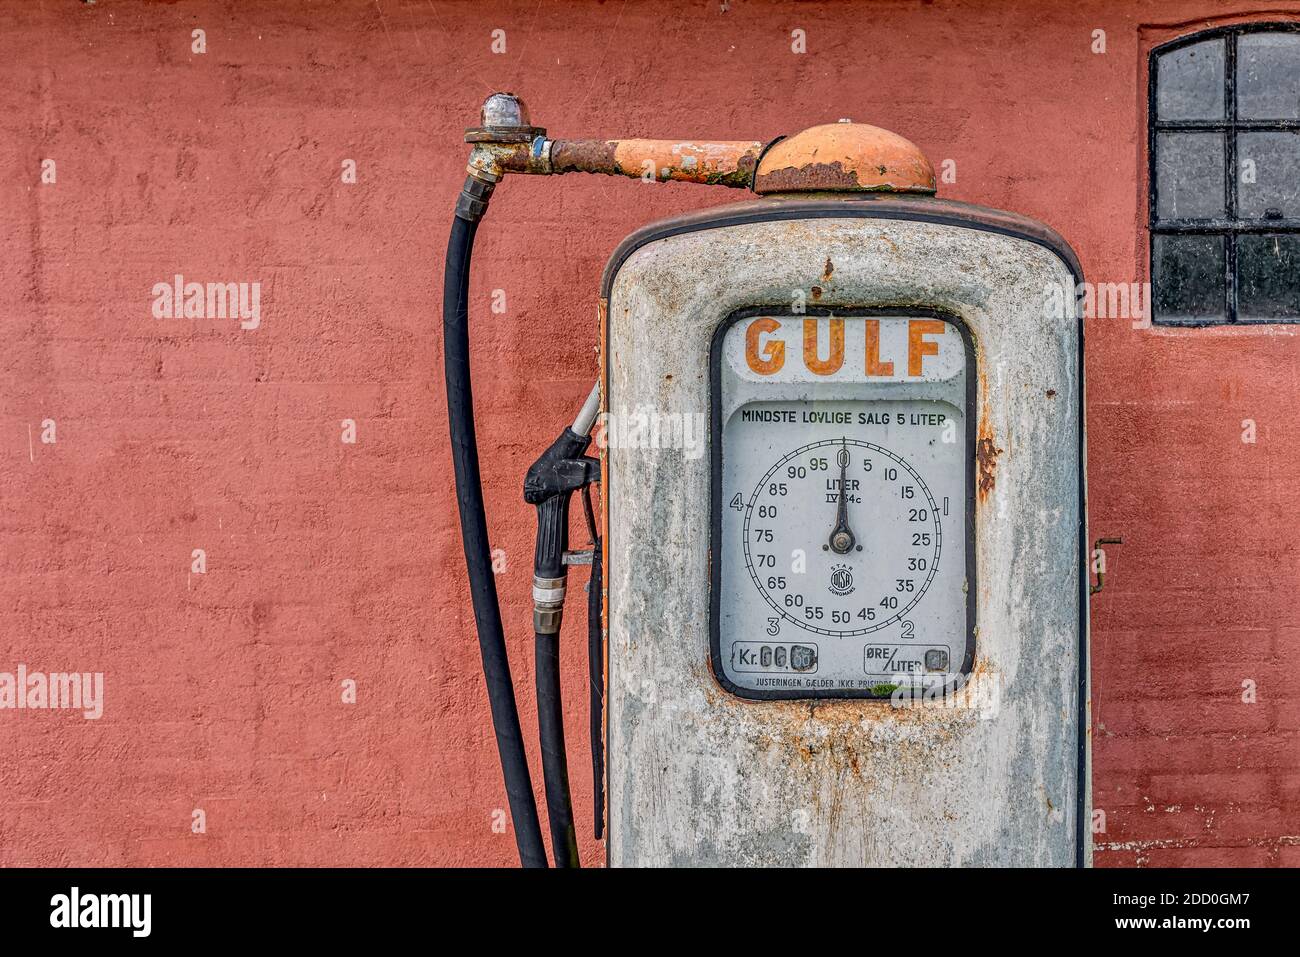 Eine verrostete Gaspumpe für Gulf Benzin gegen eine rot lackierte Ziegelmauer, Holl, Dänemark, 15. November 2020 Stockfoto